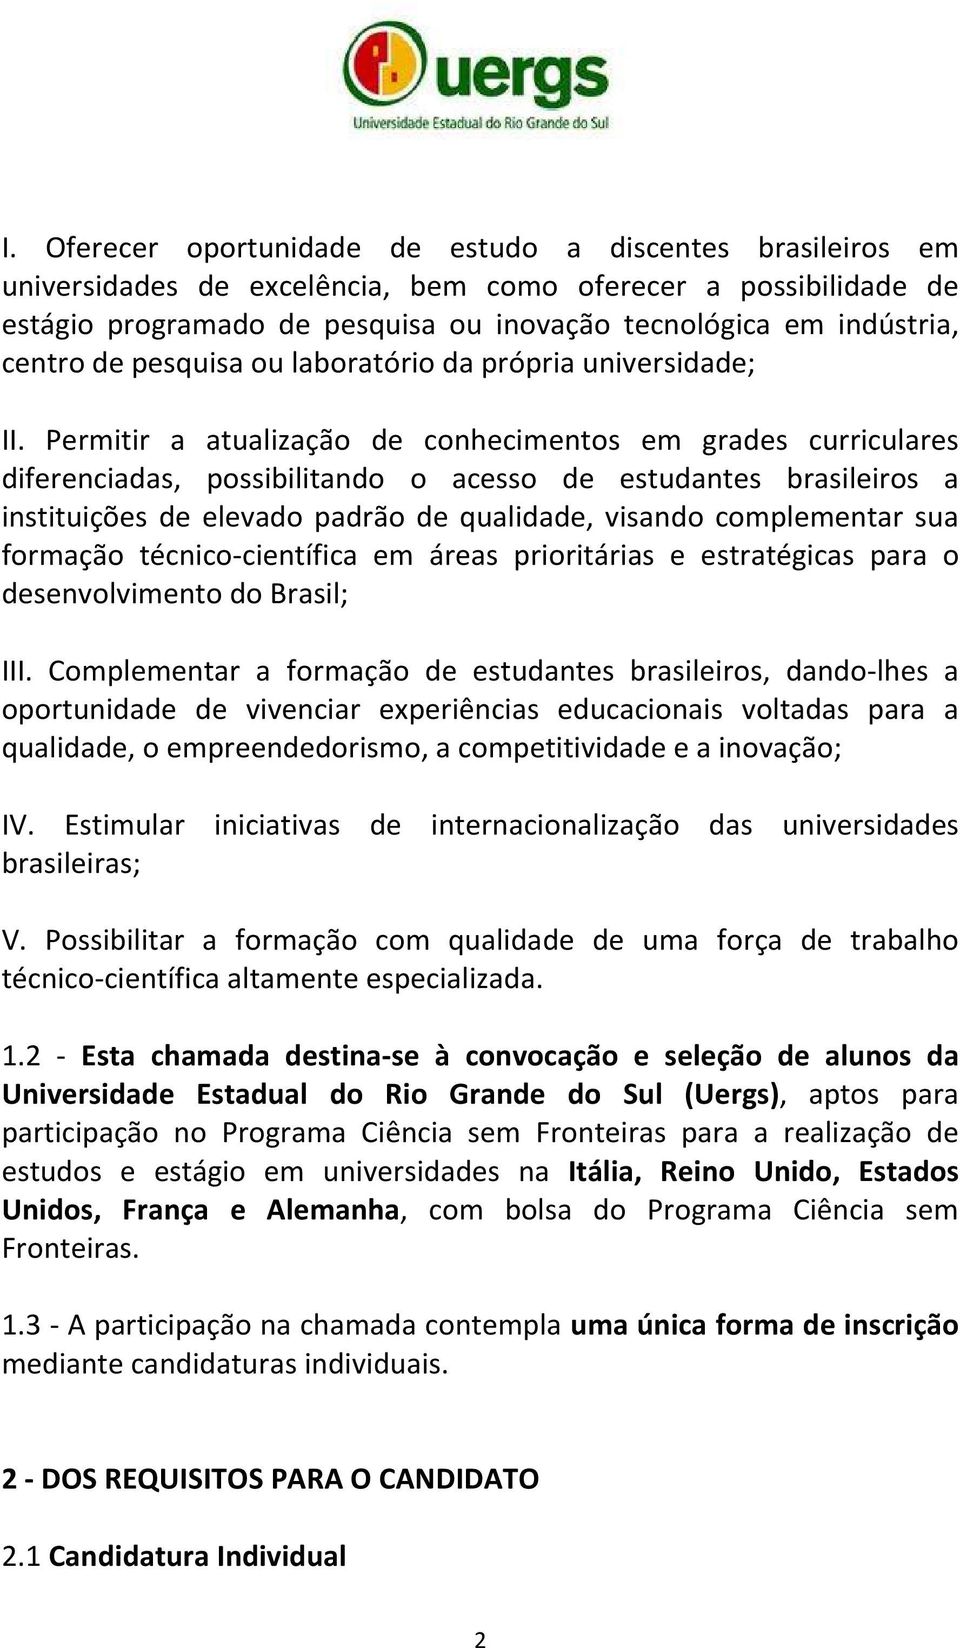 Permitir a atualização de conhecimentos em grades curriculares diferenciadas, possibilitando o acesso de estudantes brasileiros a instituições de elevado padrão de qualidade, visando complementar sua